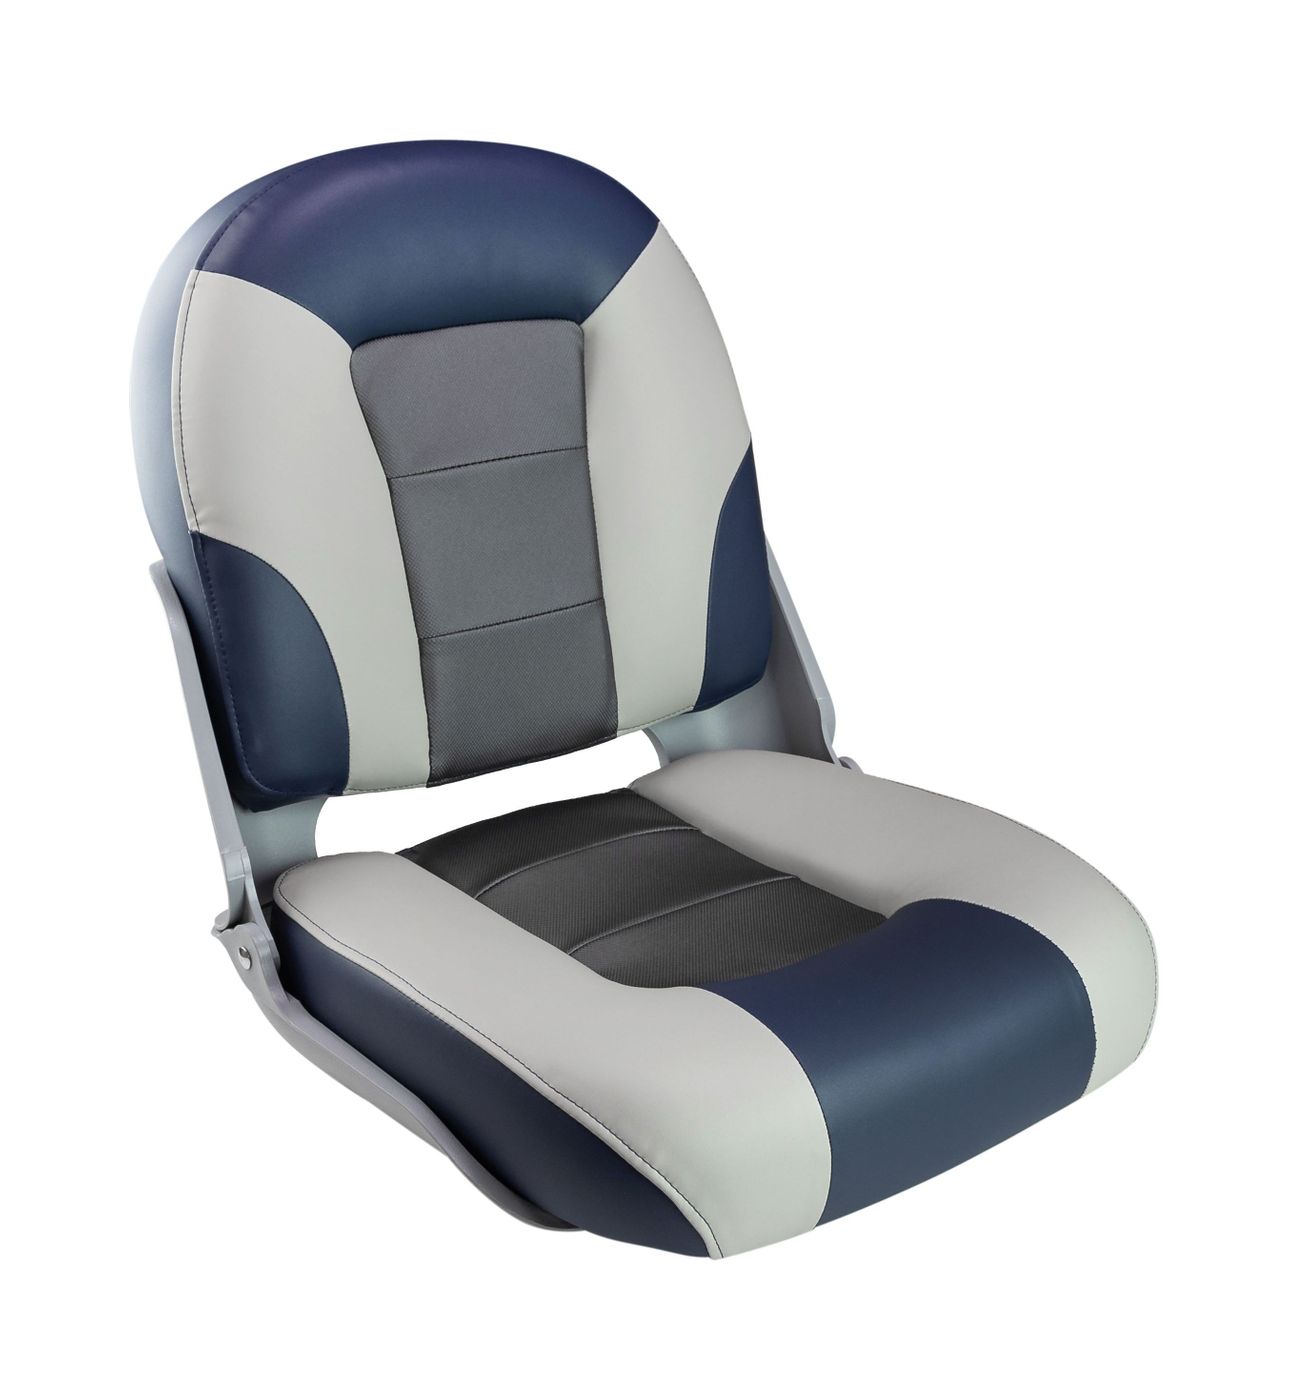 Кресло SKIPPER PREMIUM с высокой спинкой, синий/серый/темно-серый 1061069 кресло skipper premium с высокой спинкой синий серый темно серый 1061069